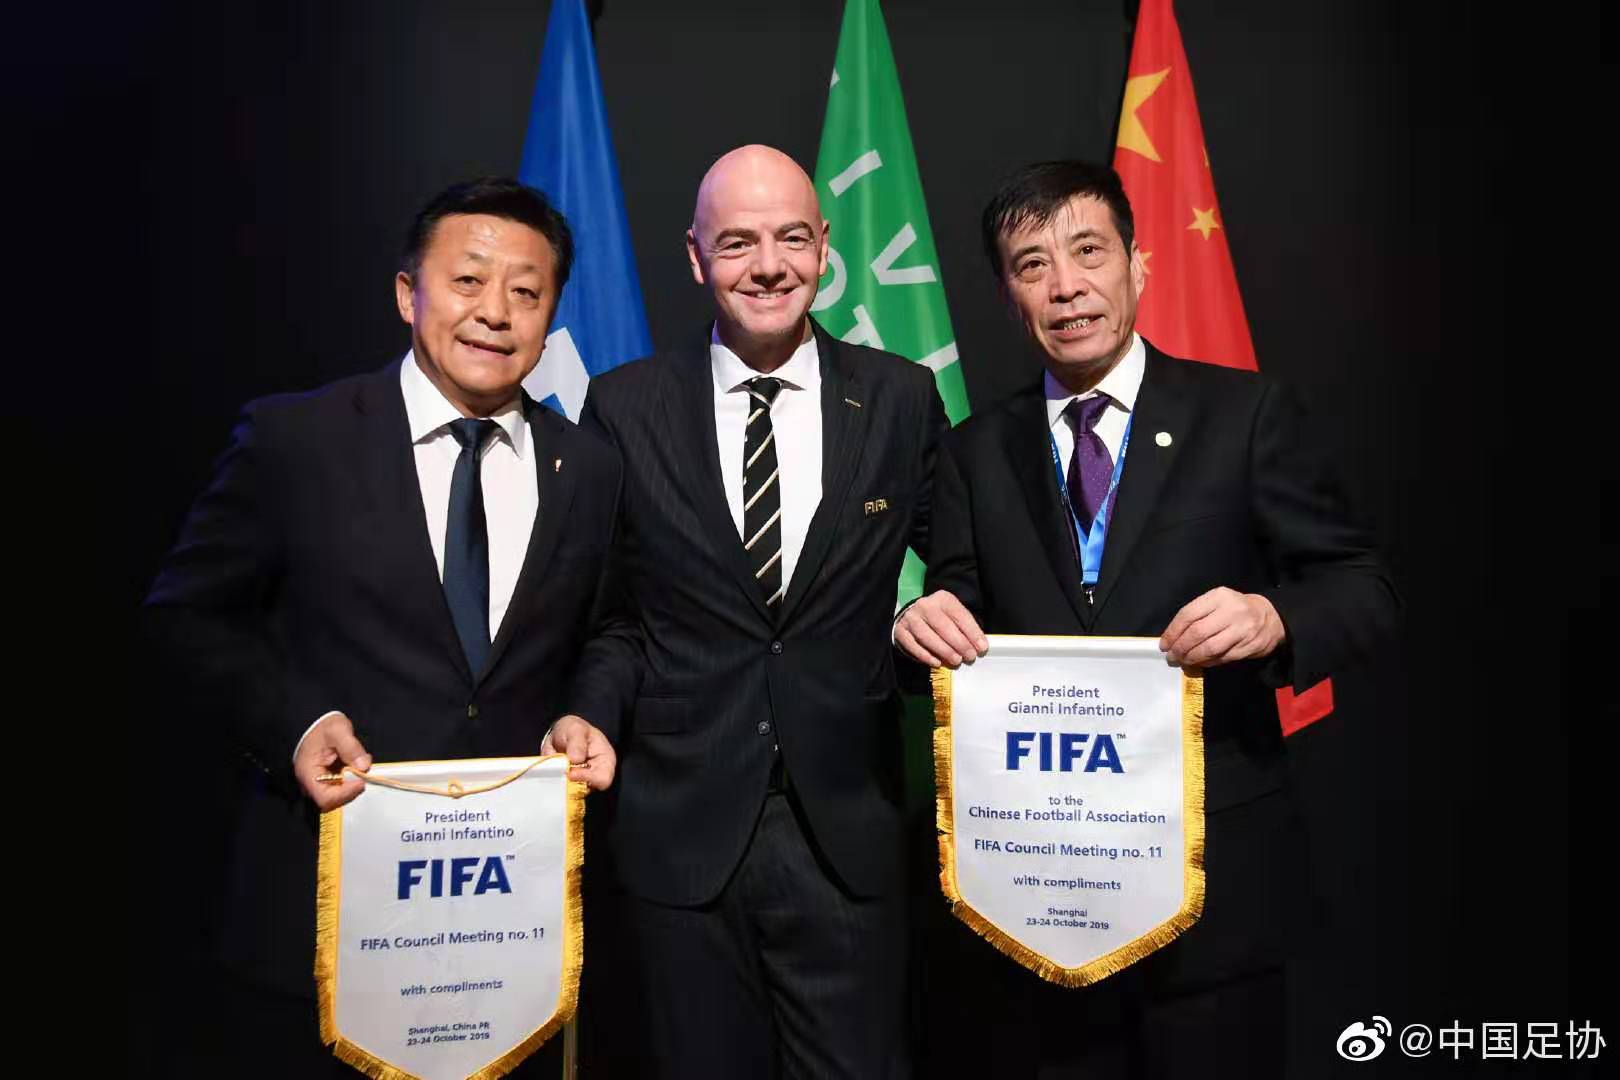 中国世俱杯可能推迟至2022或2023 为欧洲杯让路